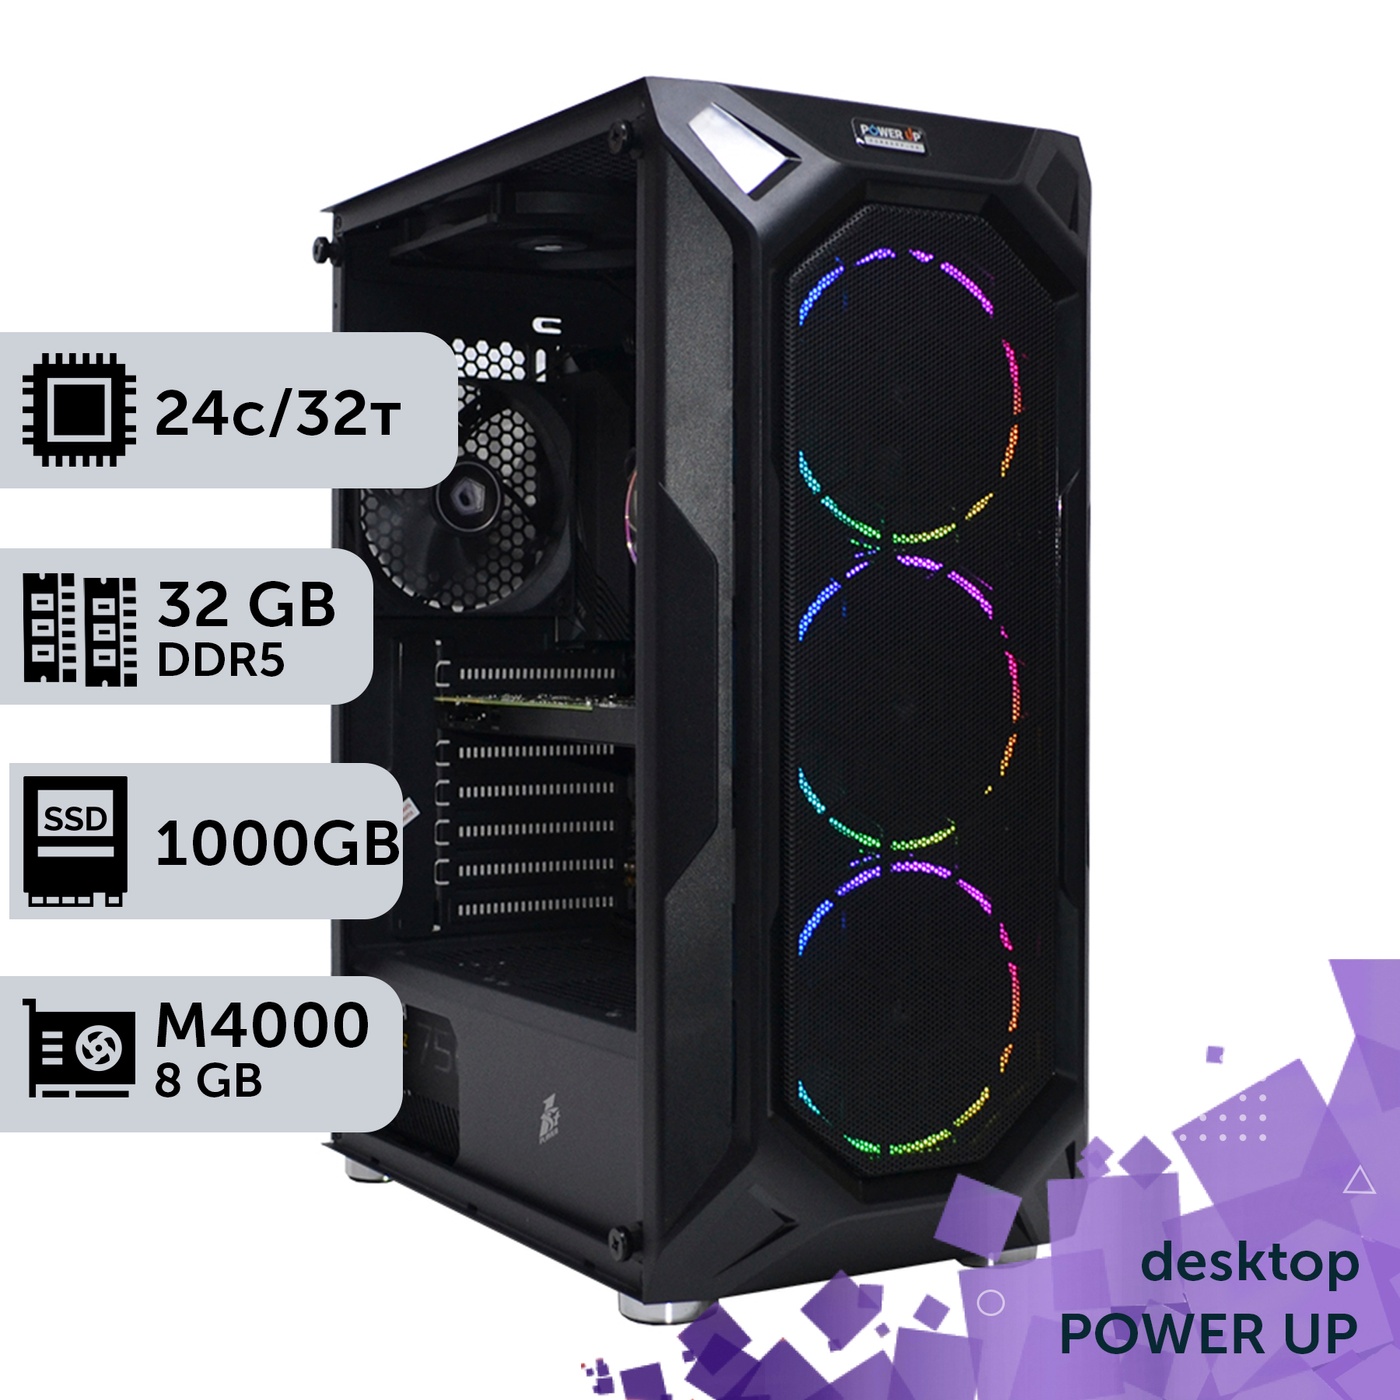 Рабочая станция PowerUp Desktop #332 Core i9 14900K/32 GB/SSD 1TB/NVIDIA Quadro M4000 8GB